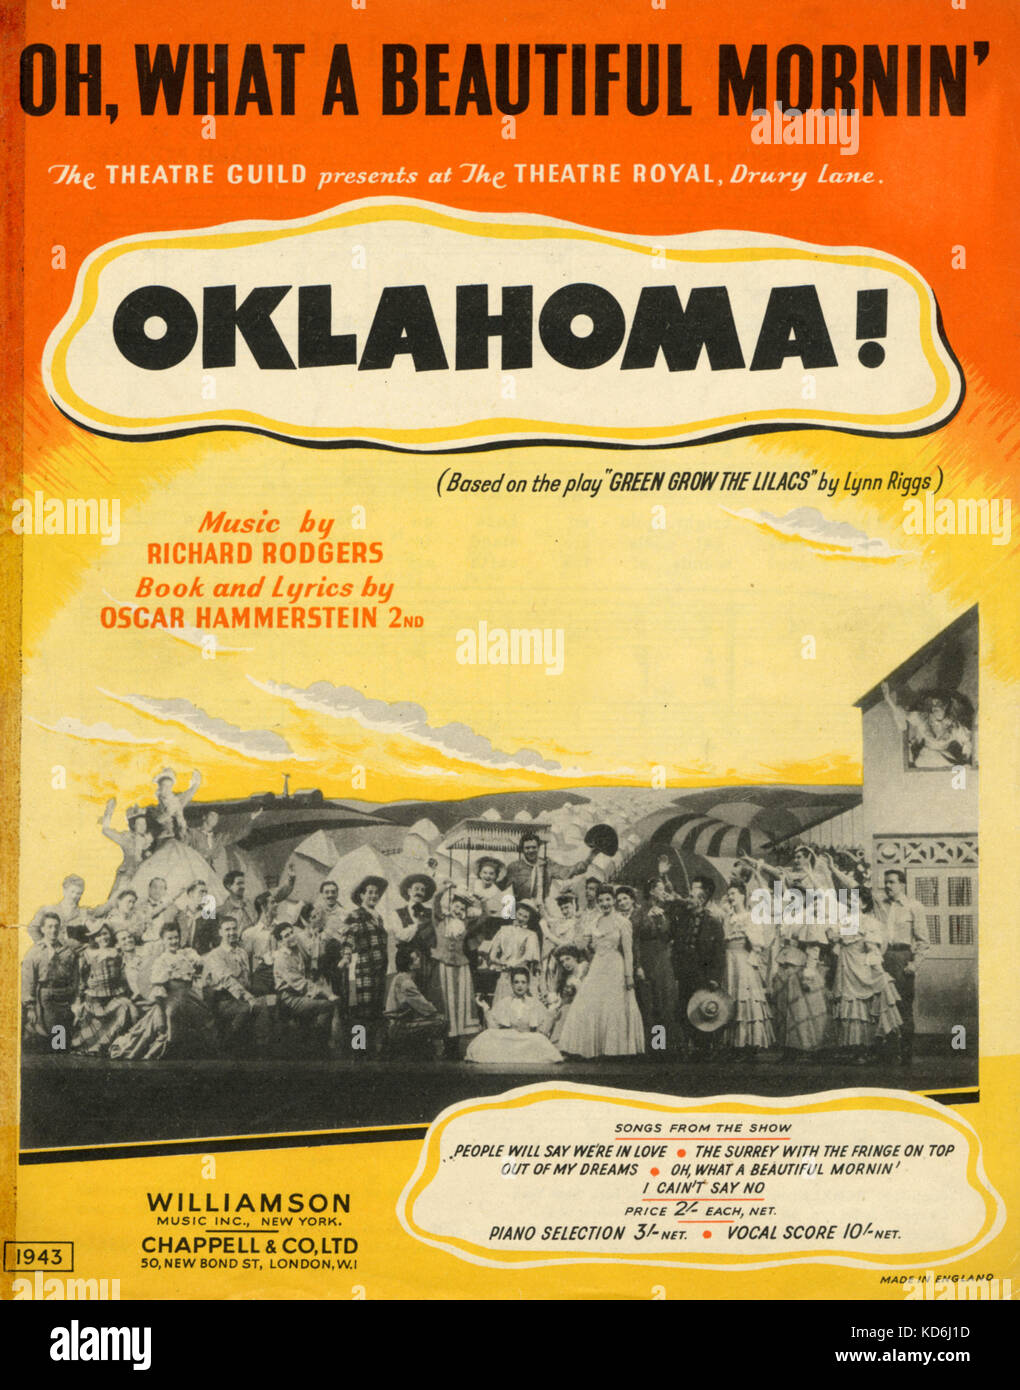 Rodgers & Hammerstein 2 - Oklahoma - Score Cover von 'Oh, was für eine schöne Mornin' von Theatre Royal, Drury Lane produnction. London, Chappell, 1943 veröffentlicht. Stockfoto